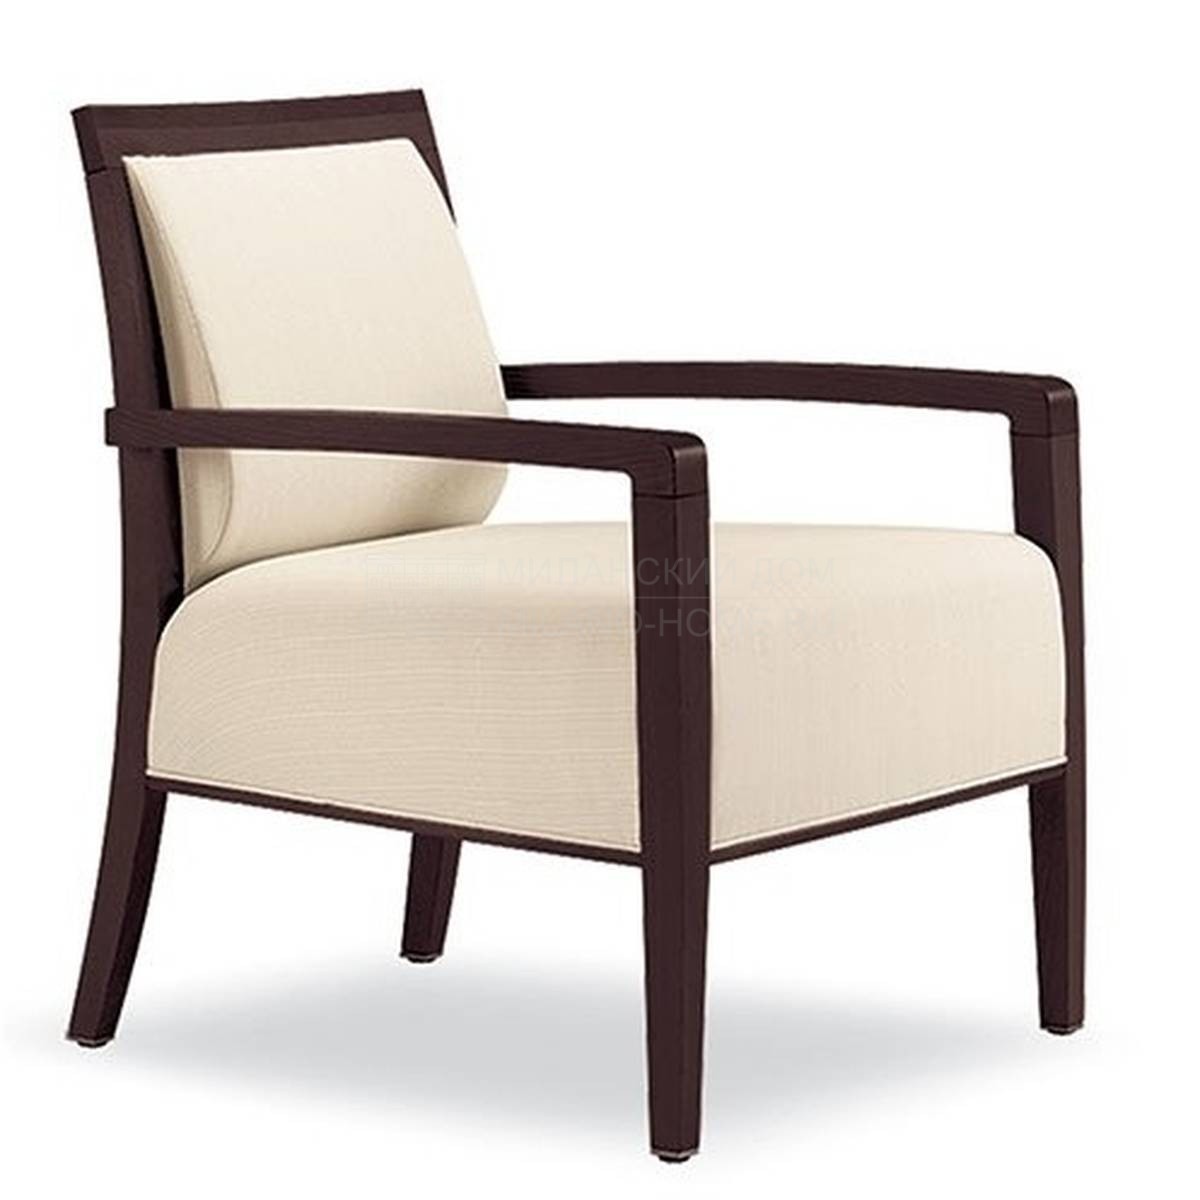 Полукресло Skyline lounge chair из Италии фабрики TONON